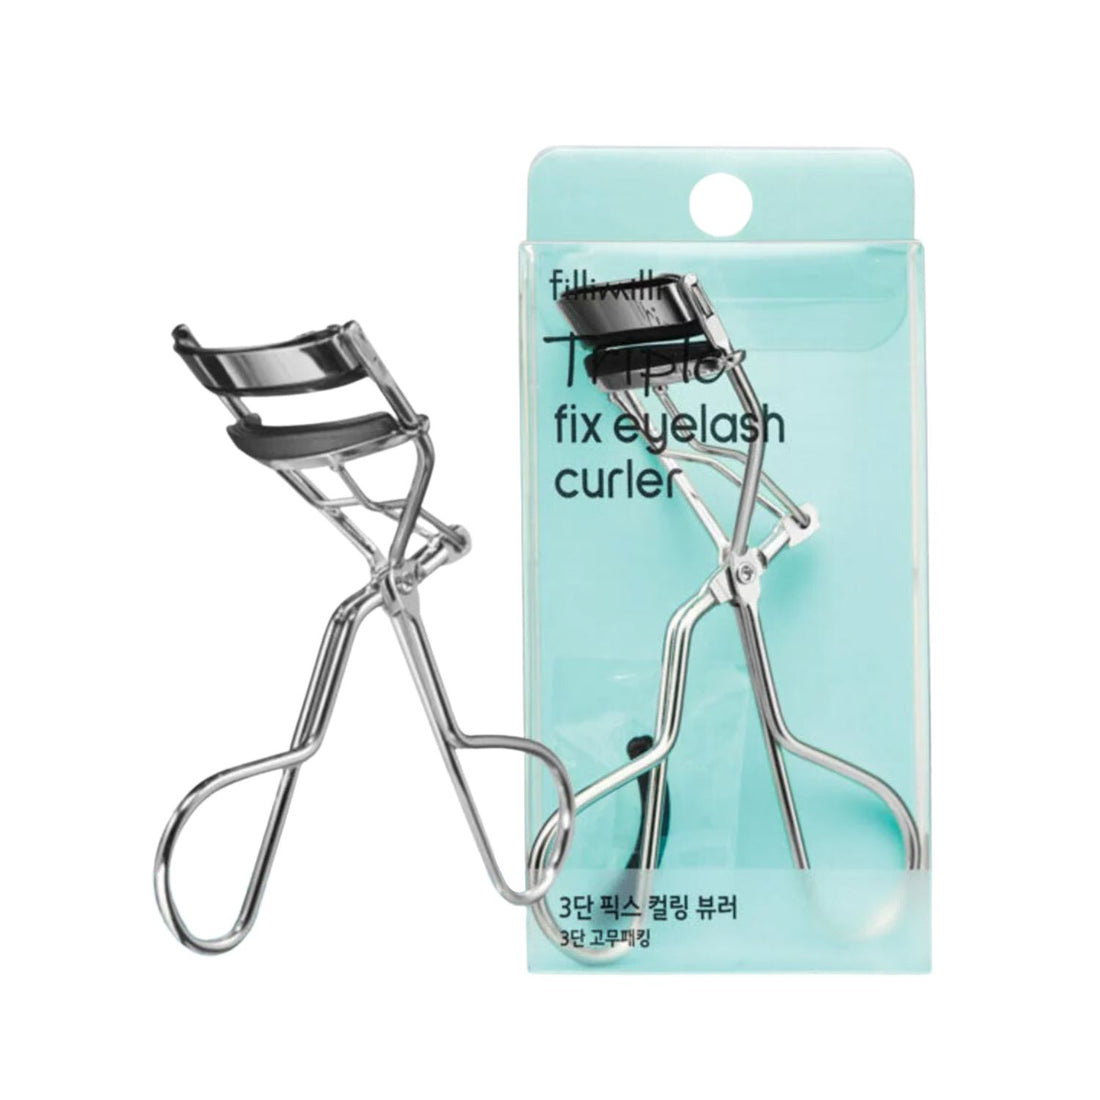 fillimilli Triple Fix Eyelash Curler Hair Care fillimilli ORION XO Sri Lanka